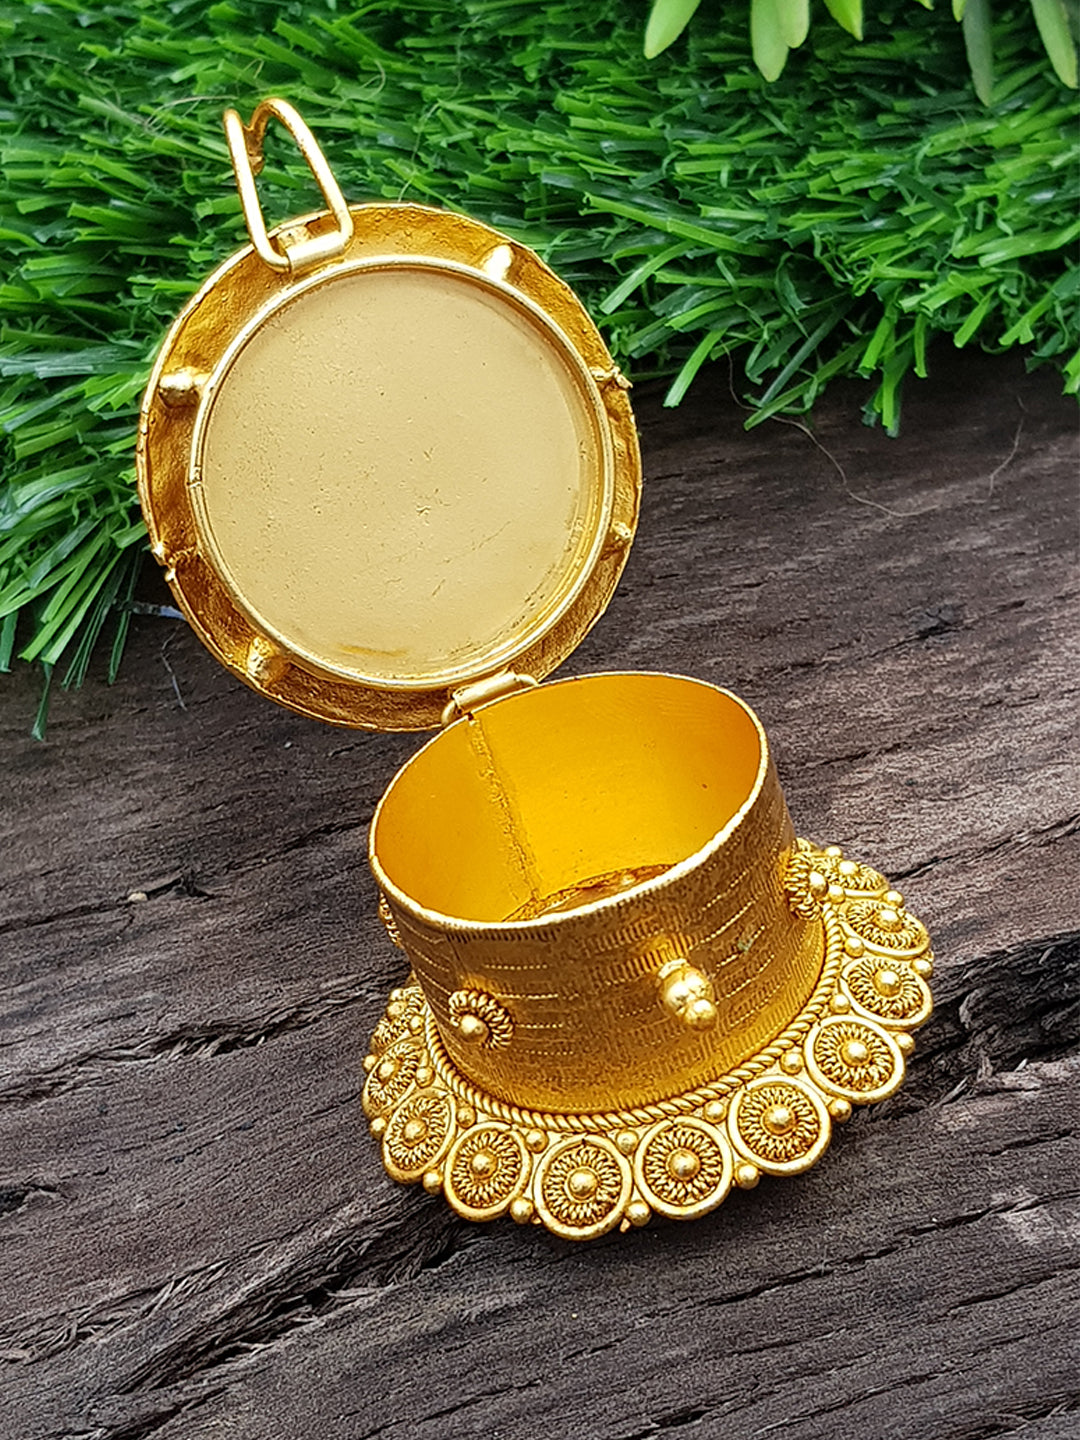 22k Gold Plated Peacock Premium Kum Kum Box best for gifting